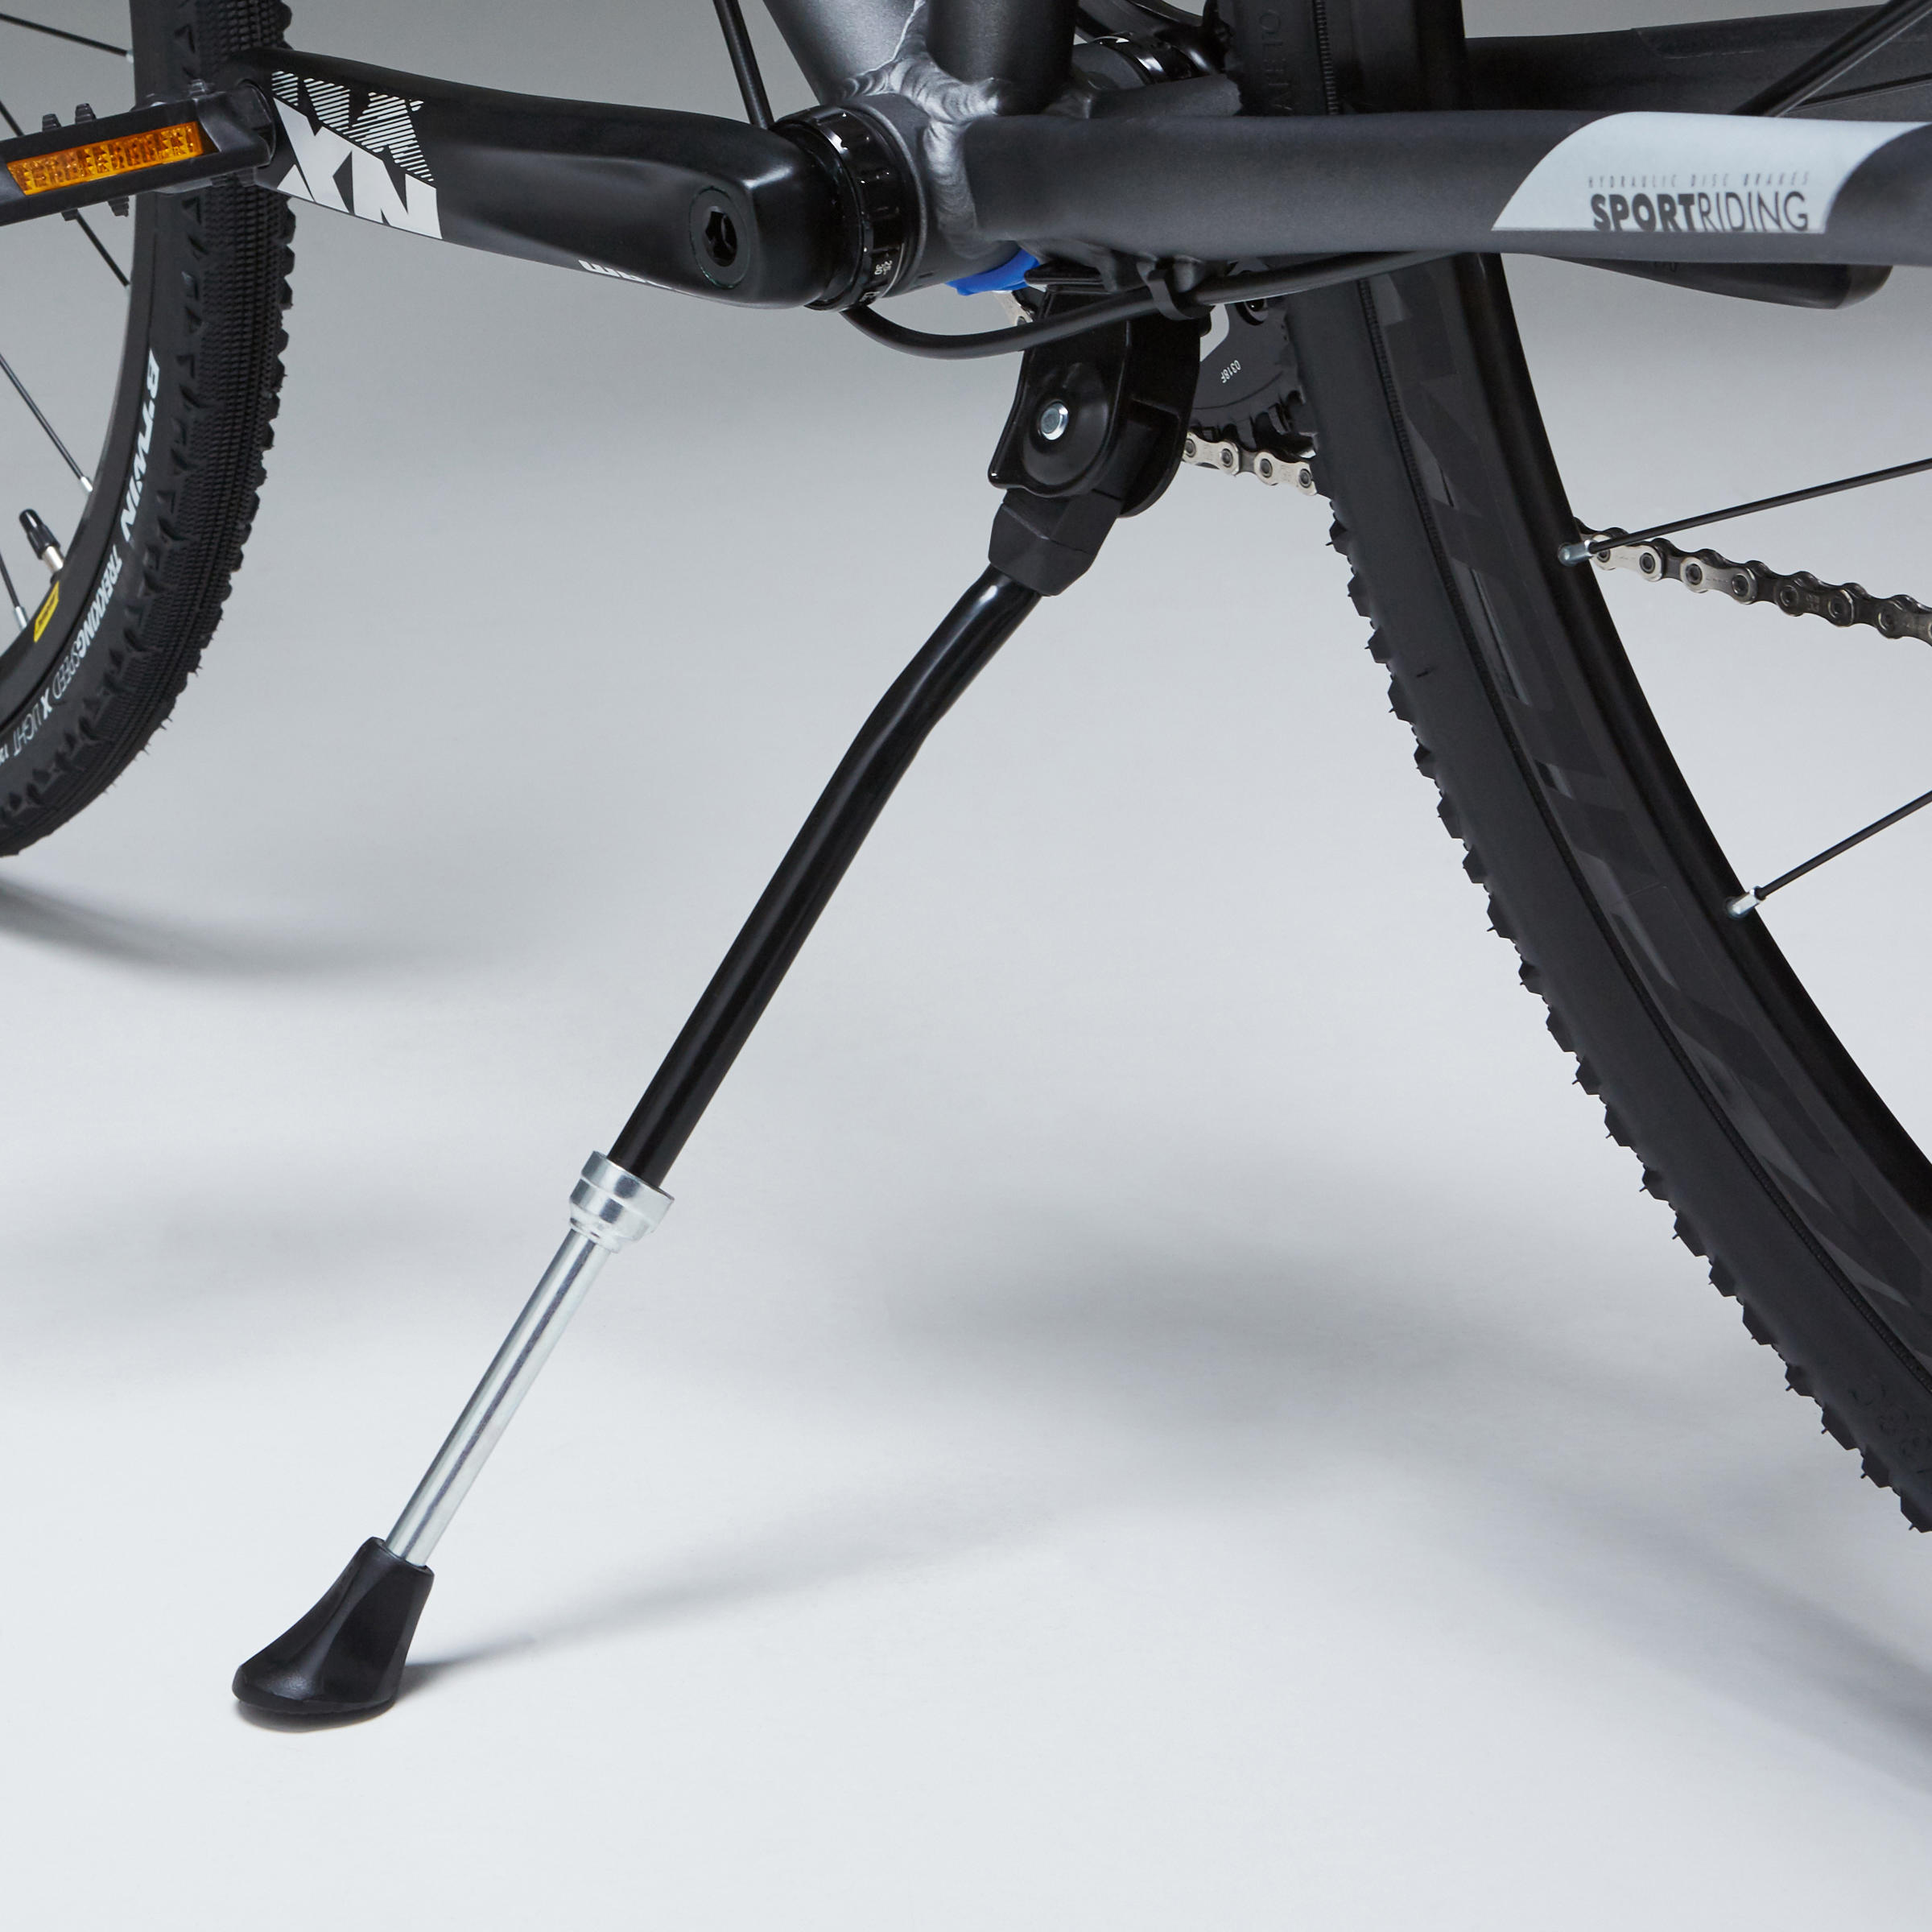 Adjustable Bike Kickstand - KS 100 - BTWIN